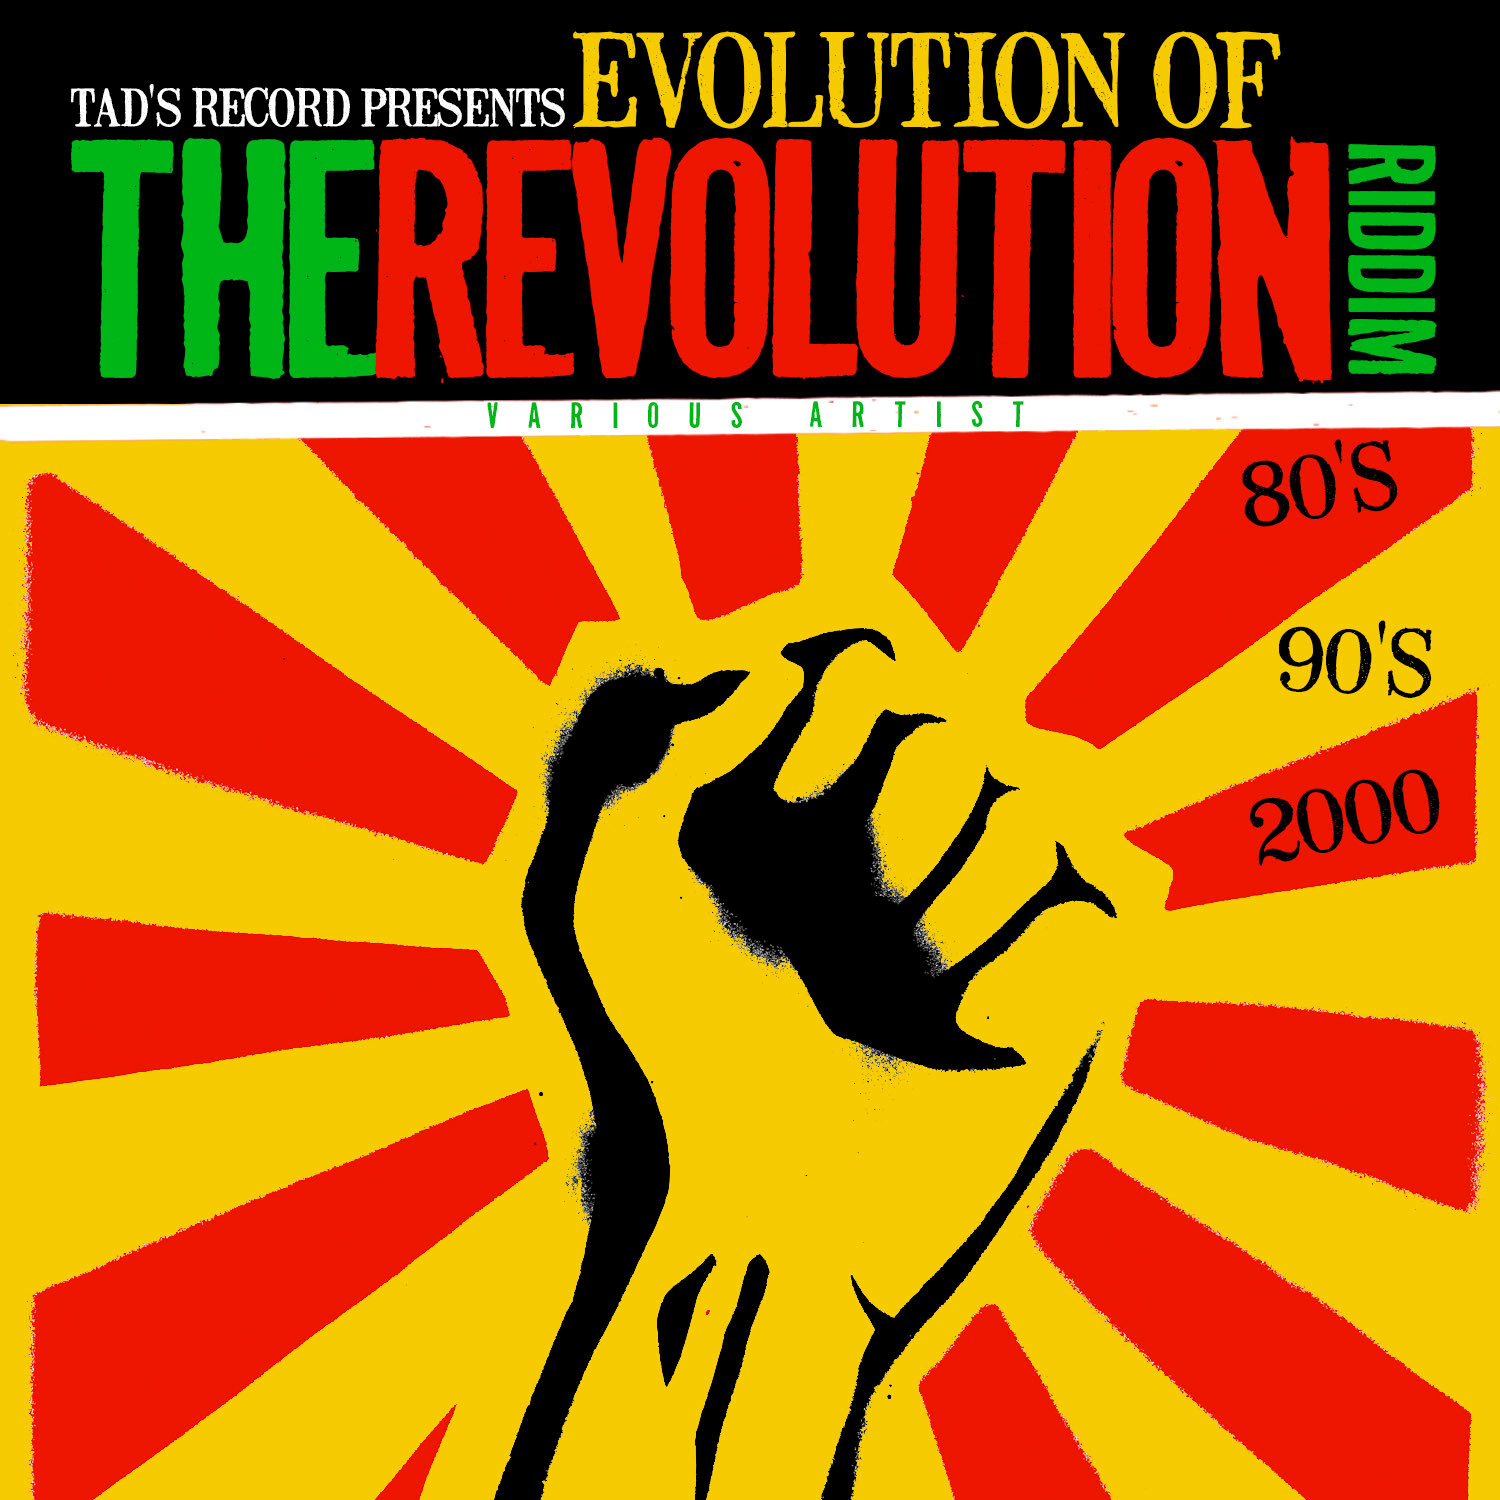 Revolution Version